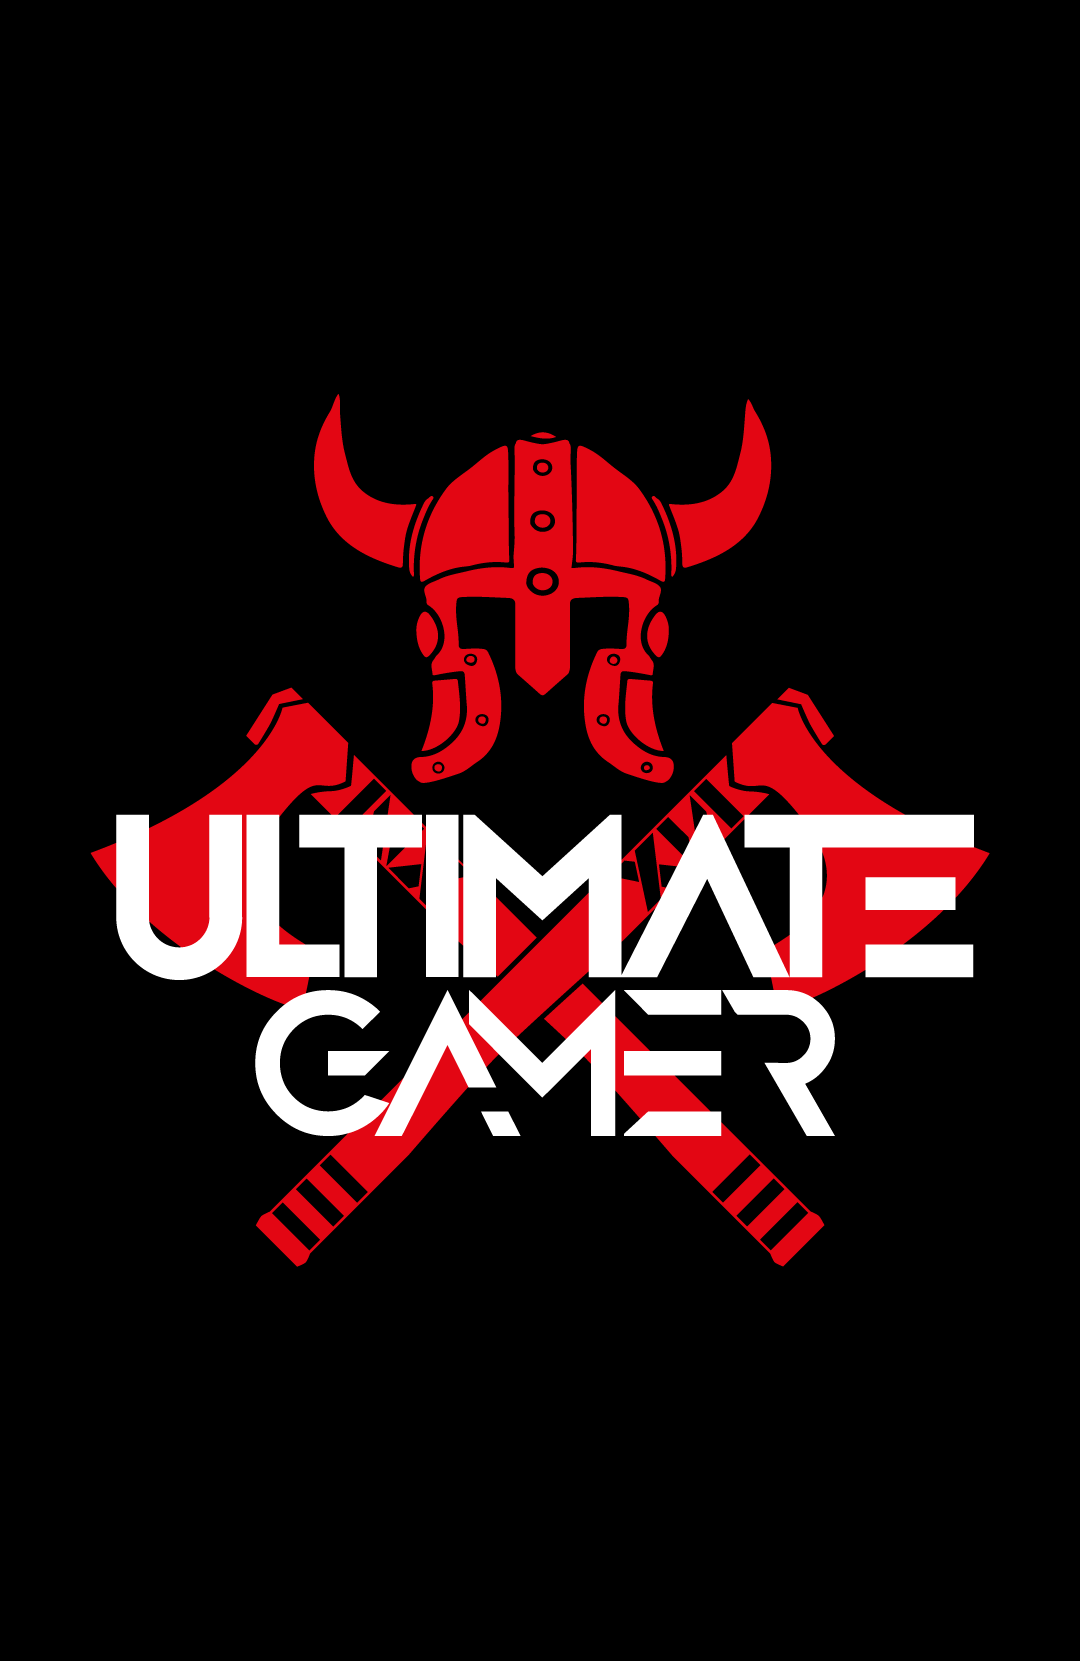 Gamer Logo - Ultimate Gamer Logo Design